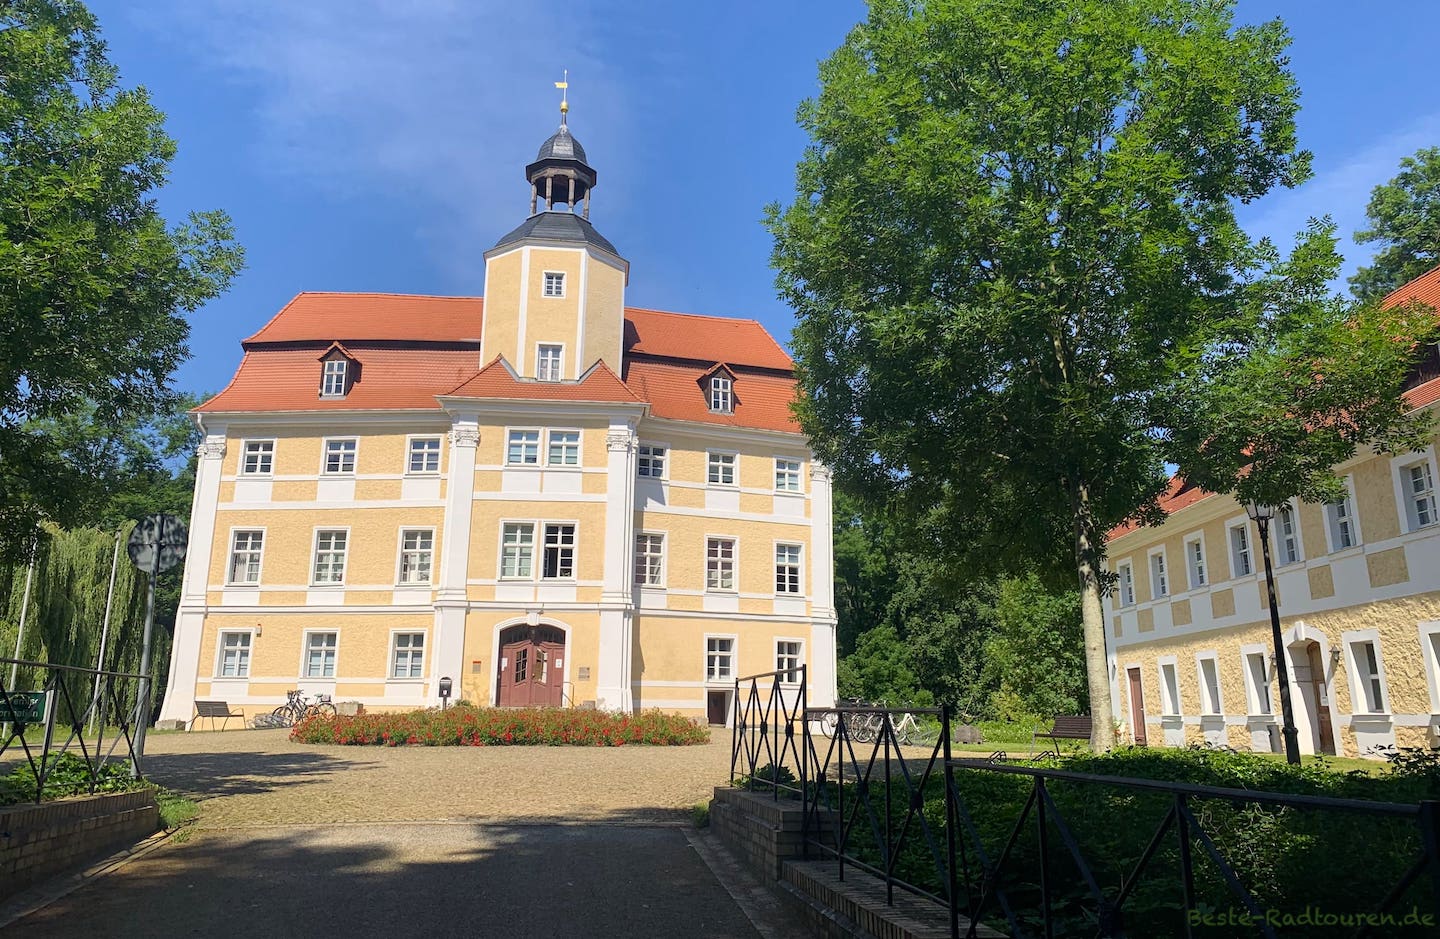 Foto von der Zufahrt aus: Schloss Vetschau, Vorderseite und Nebengebäude